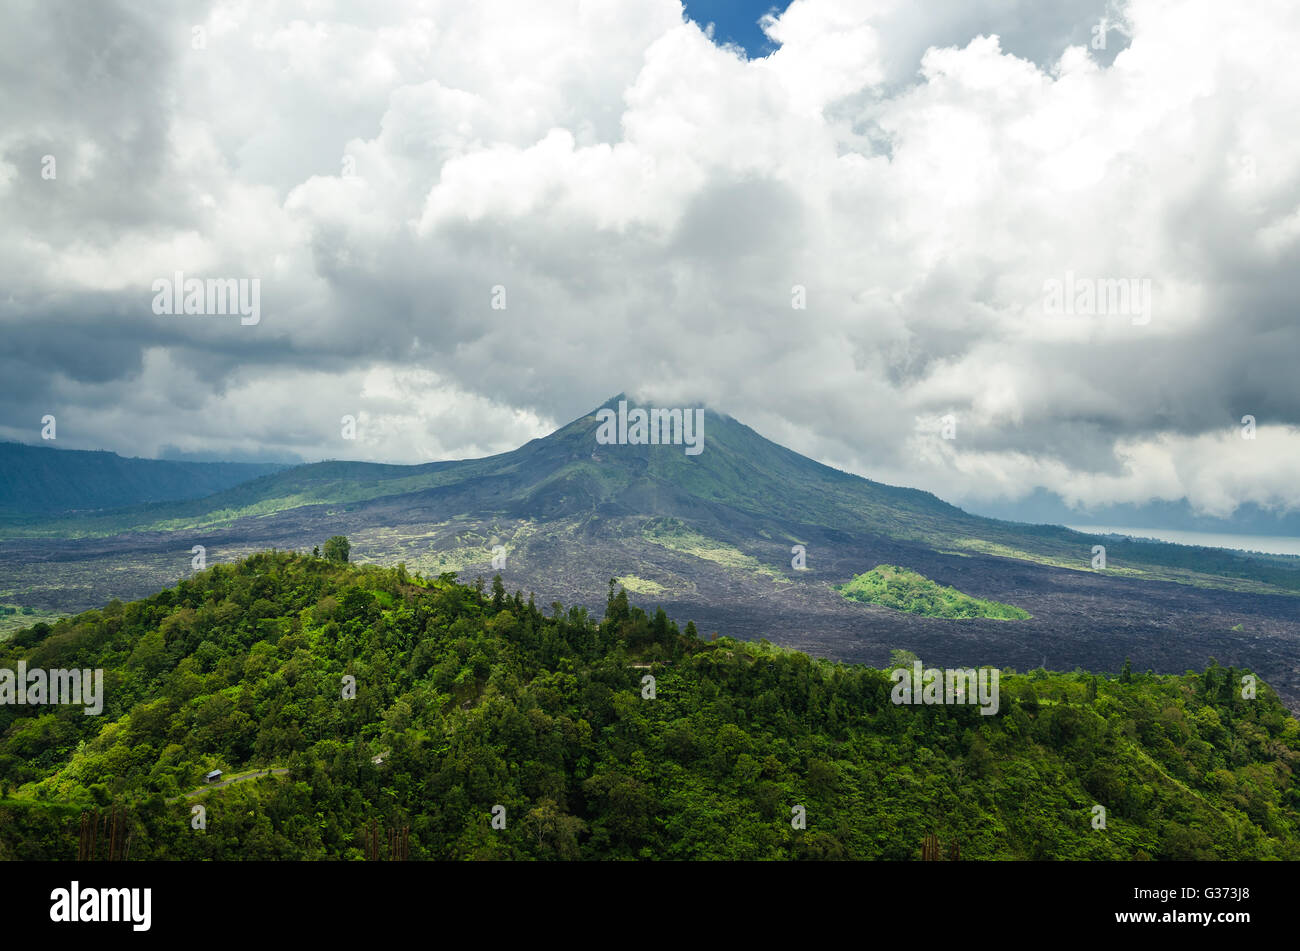 Vulkan Mount View von Kintamani, Bali, Indonesien - Blick auf Vulkan Landschaft mit Wald in Bali. Stockfoto